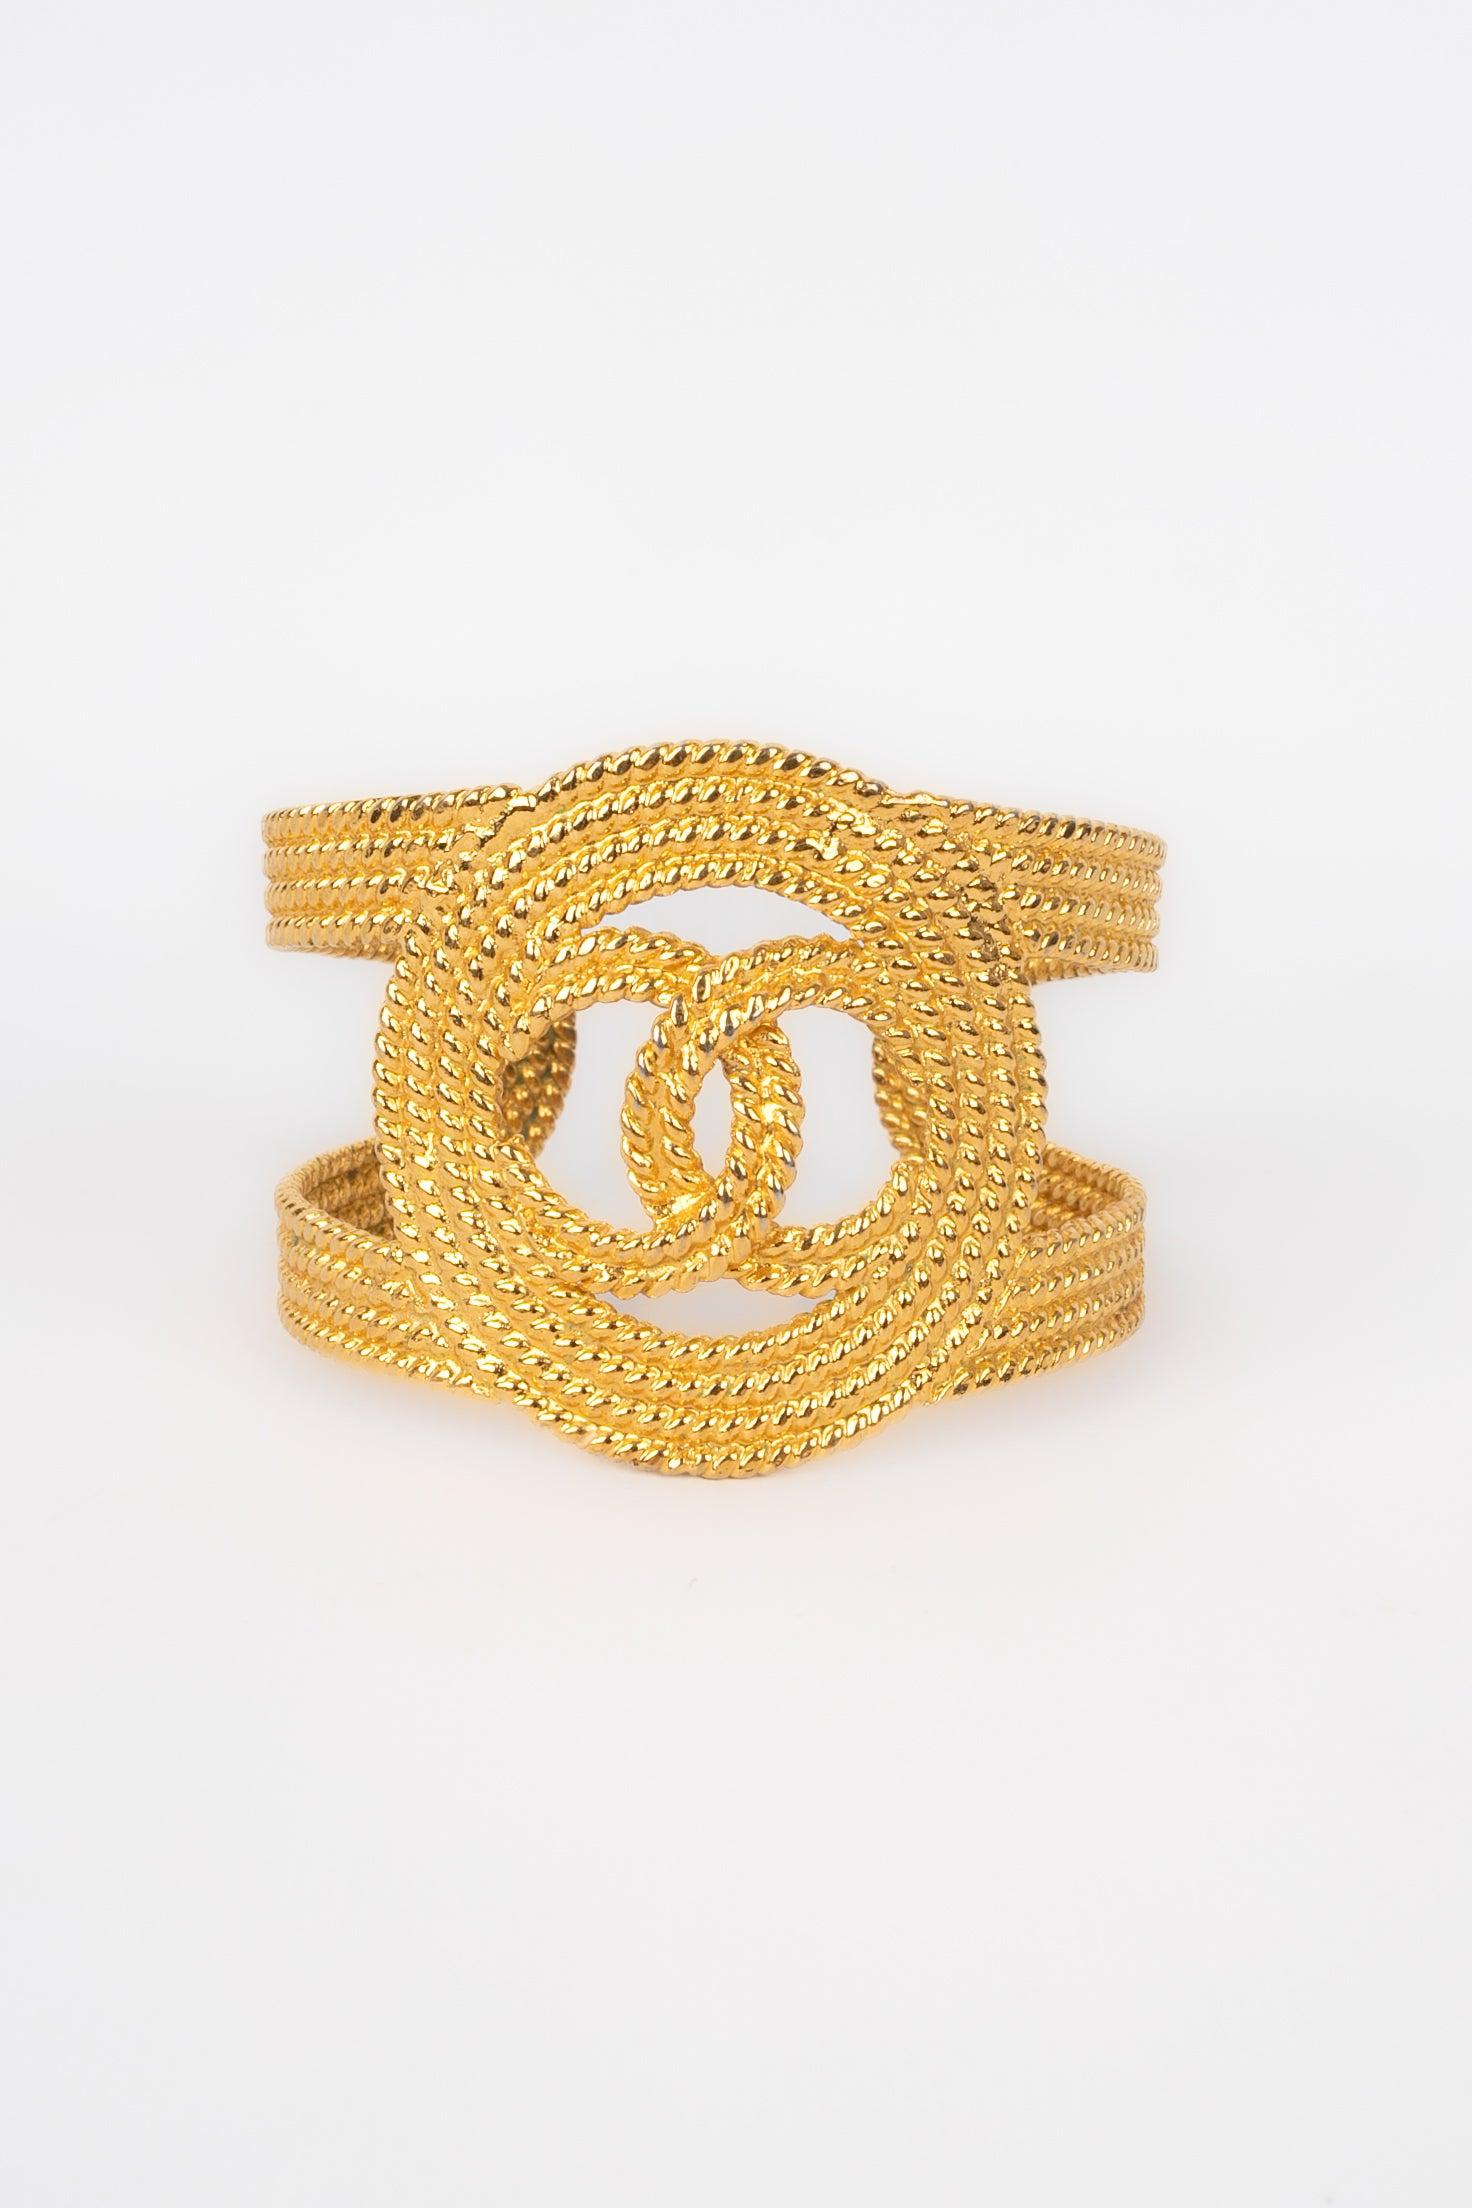 Chanel - (Made in France) Bracelet manchette ajouré en métal doré. Collectional 2cc8.
 
 Informations complémentaires : 
 Condit : Très bon état.
 Dimensions : Longueur : 15,5 cm - Hauteur : 5 cm Longueur : 15,5 cm - Hauteur : 5 cm
 Période : 21ème